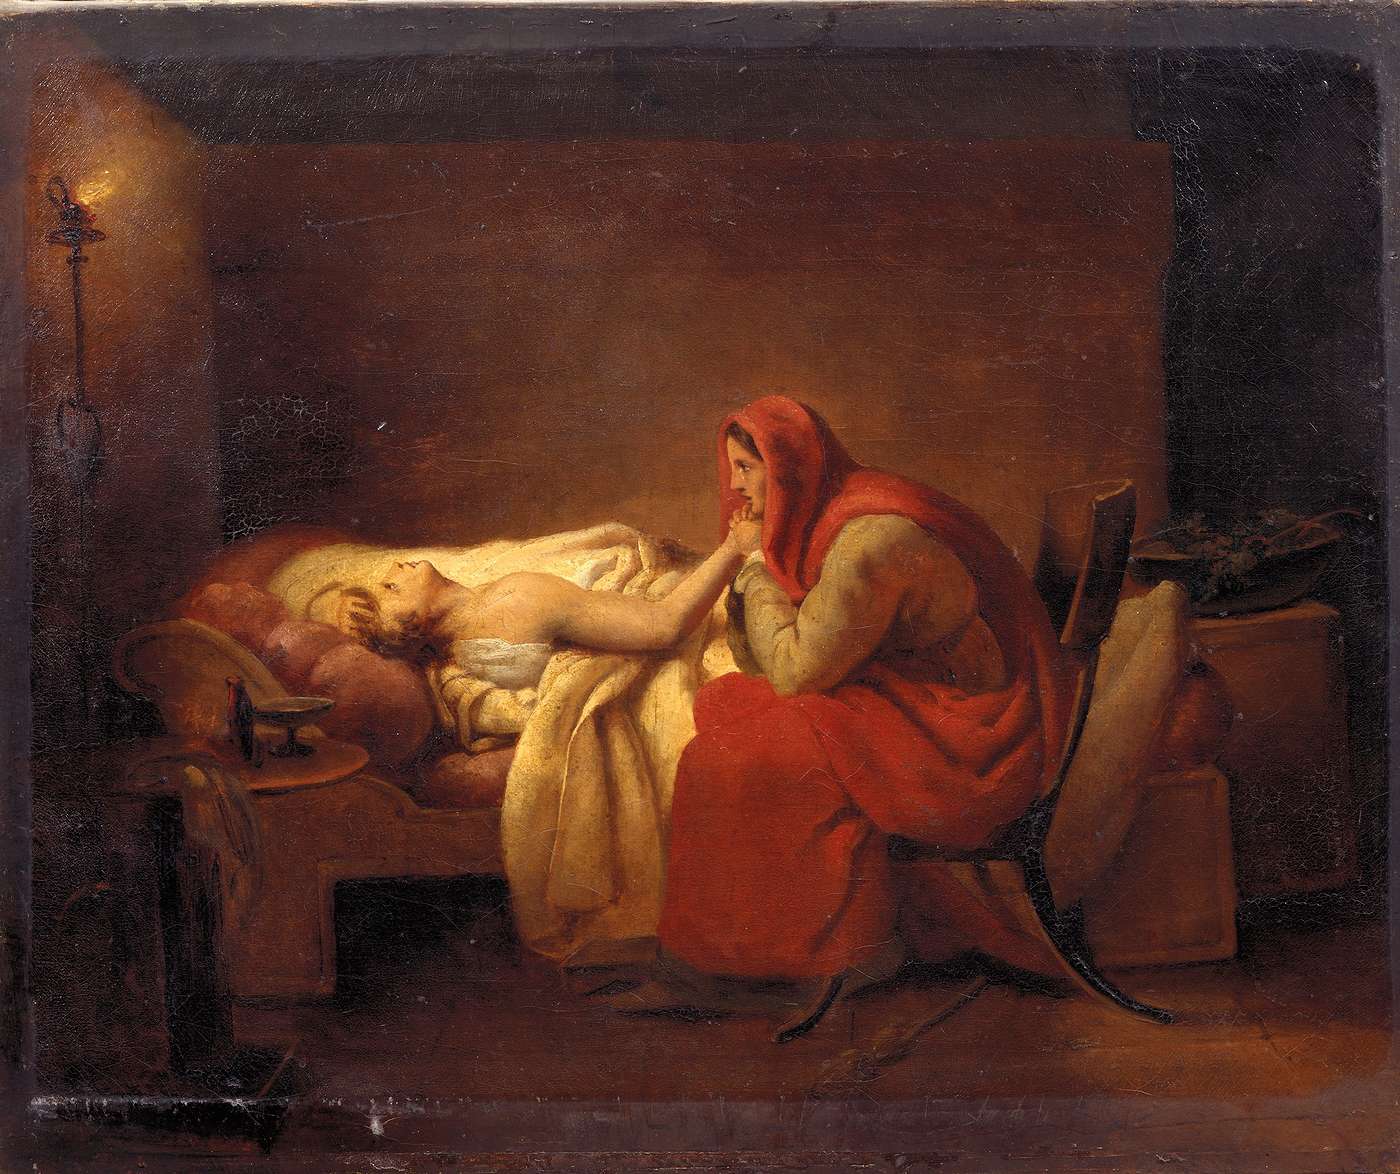 Le jeune malade. Ary SCHEFFER (1795 - 1858) 1824 Musée Magnin 